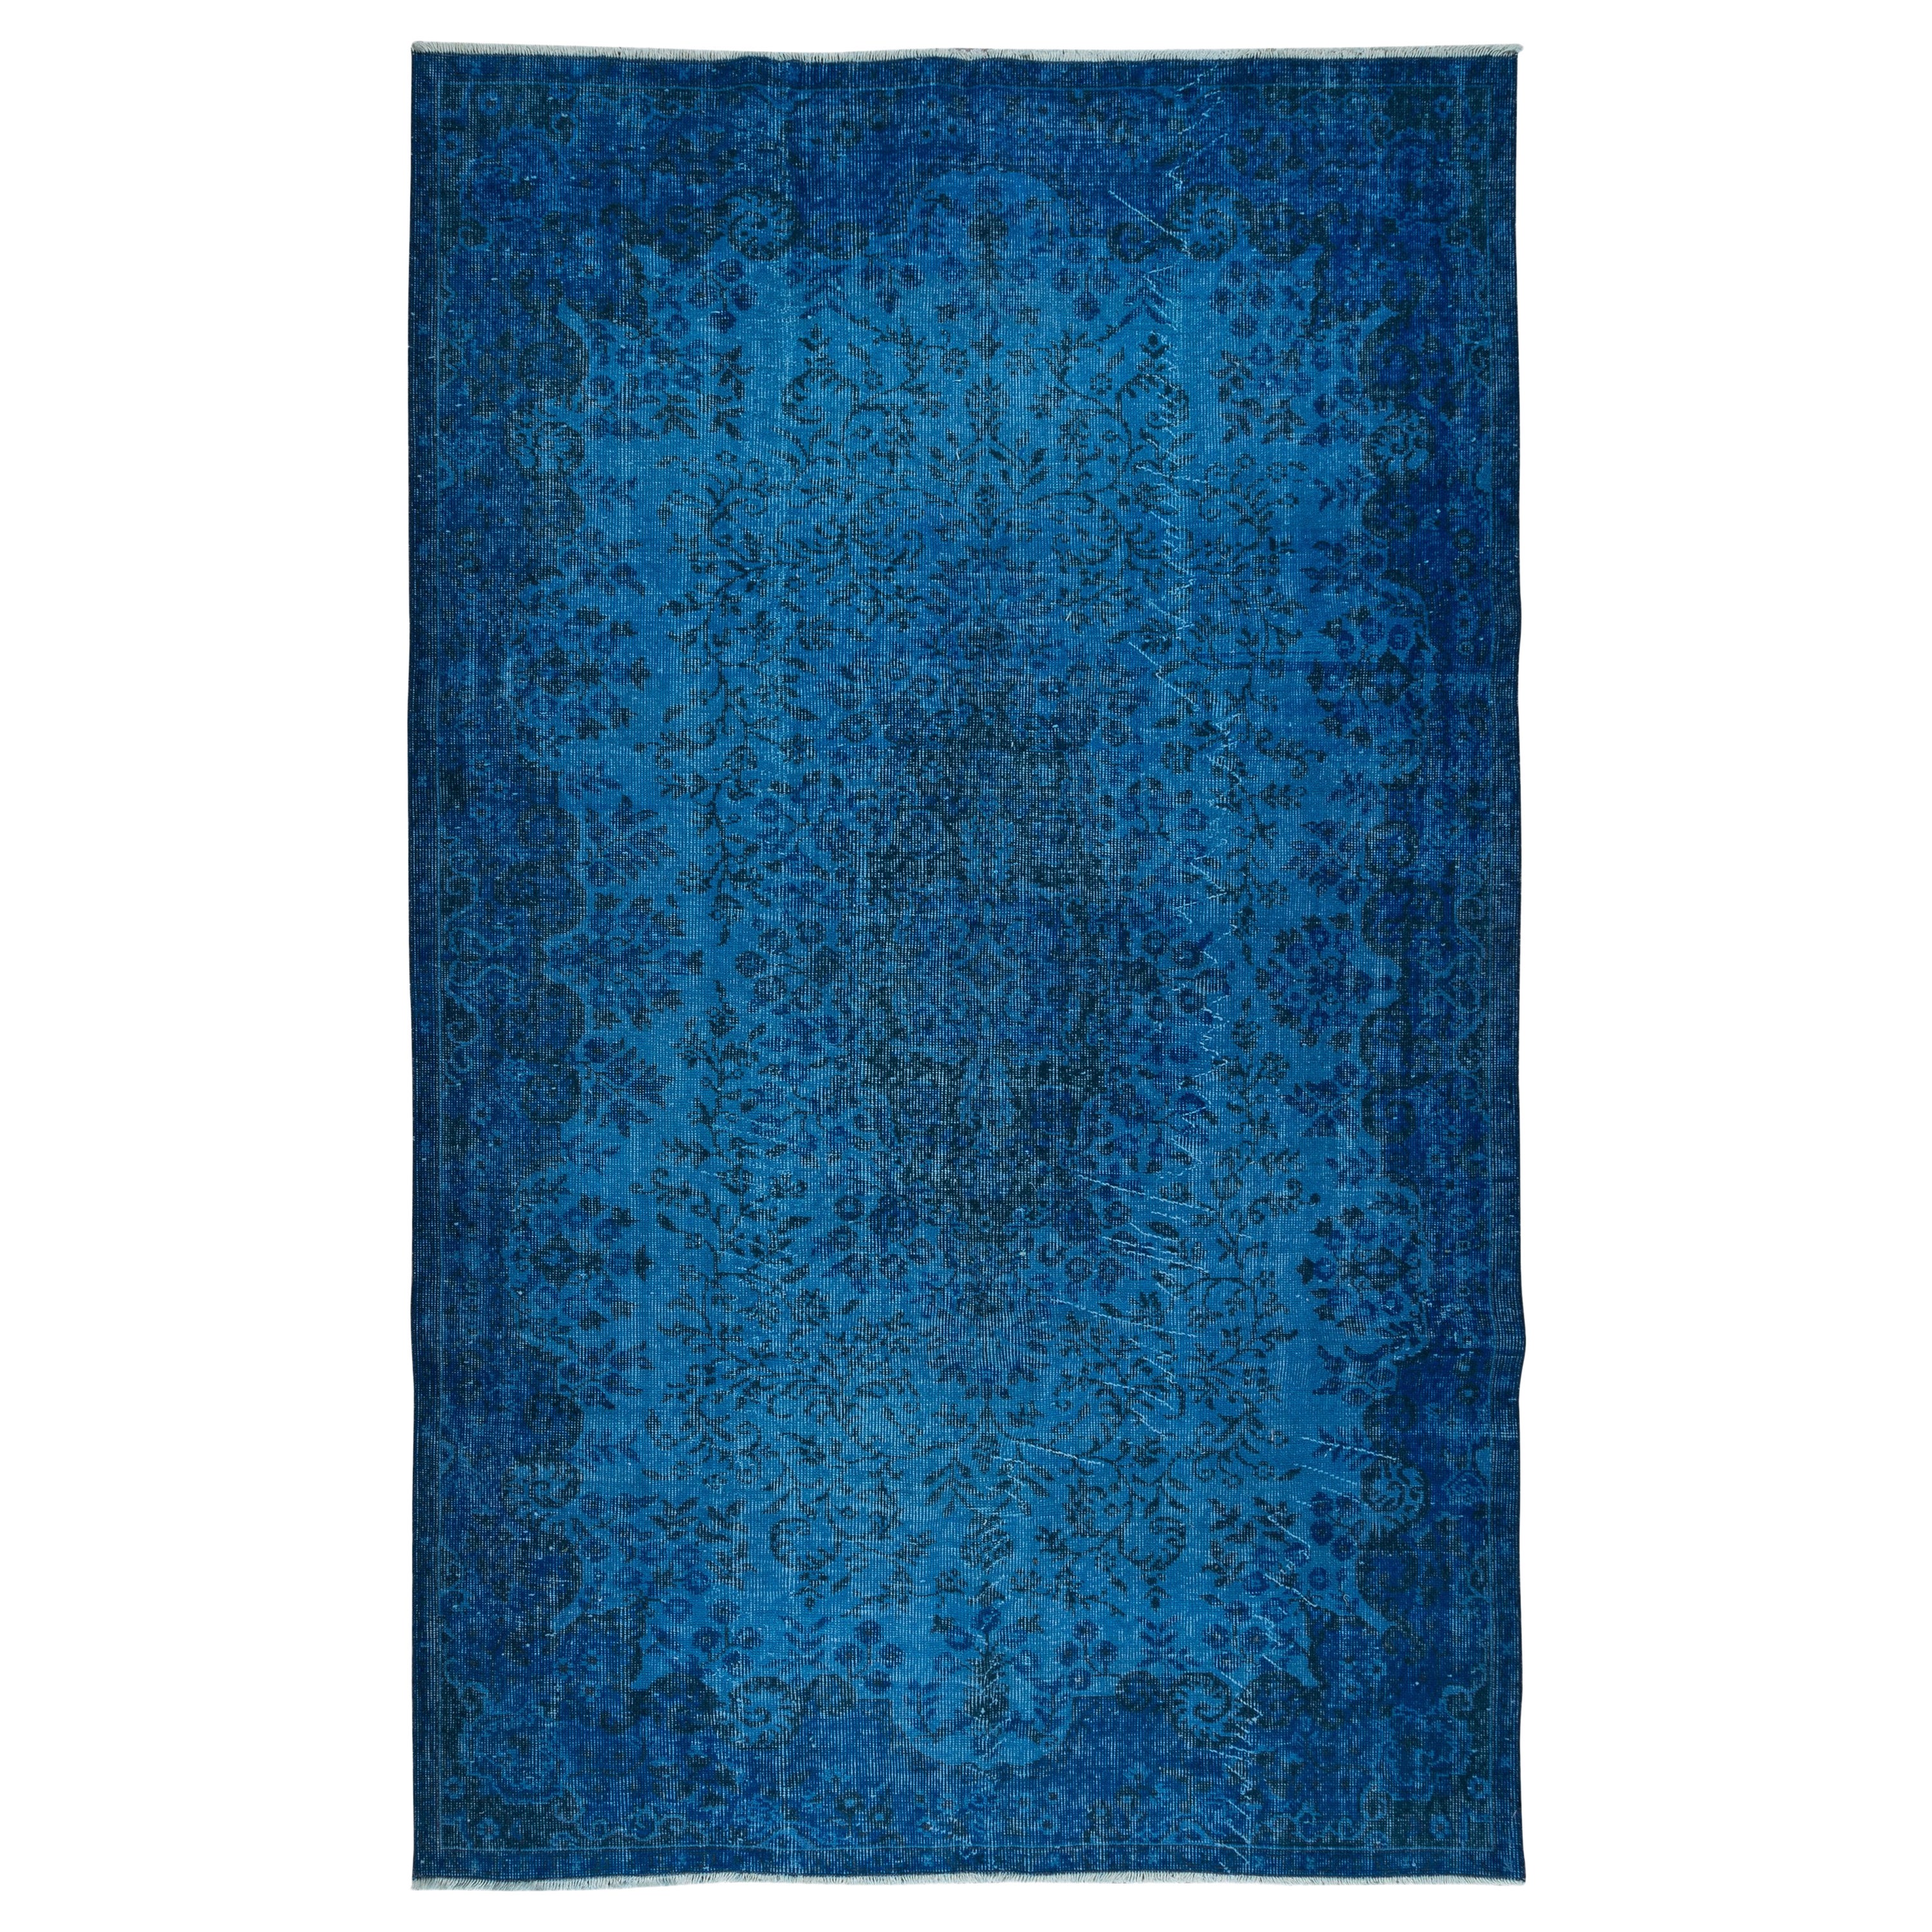 5.7x9 Ft Blauer handgefertigter türkischer Teppich für Wohnzimmer, Esszimmer und Kinderzimmer im Angebot